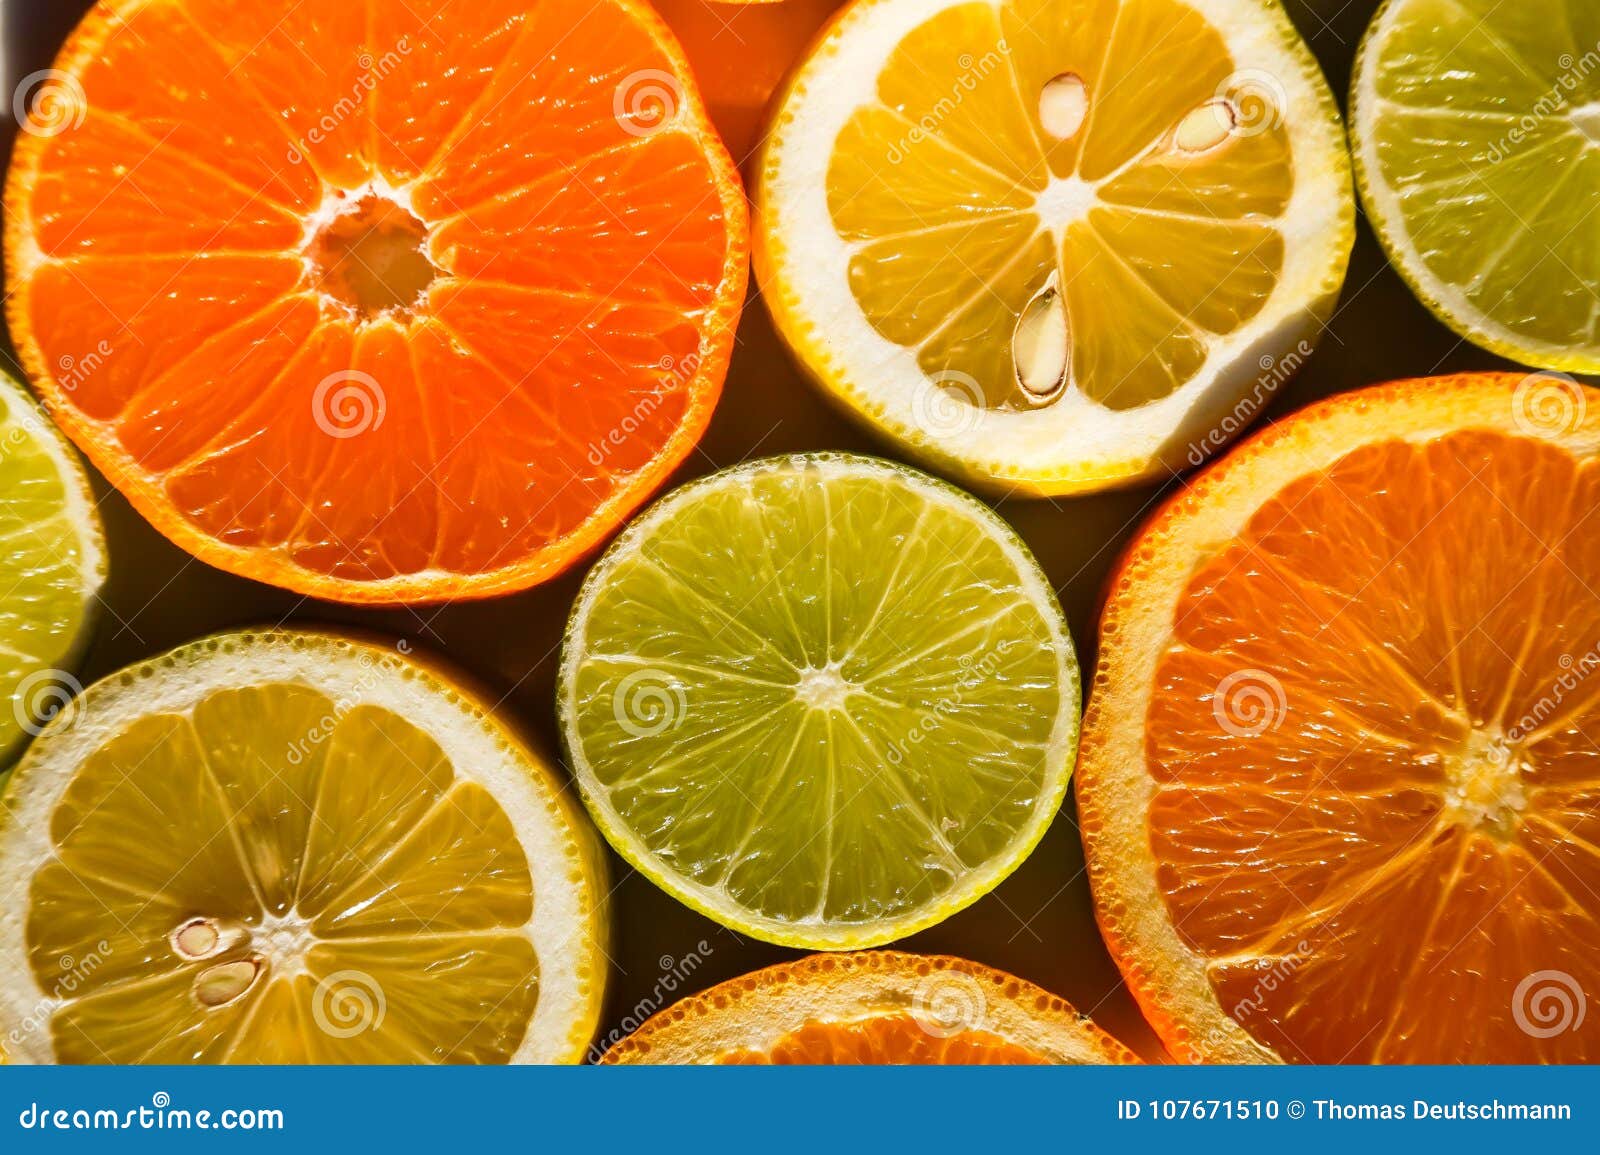 День апельсина и лимона картинки. Оранжевый лимон. День апельсина и лимона. Жень апельсинов и Лимонов. Кусочки апельсина.